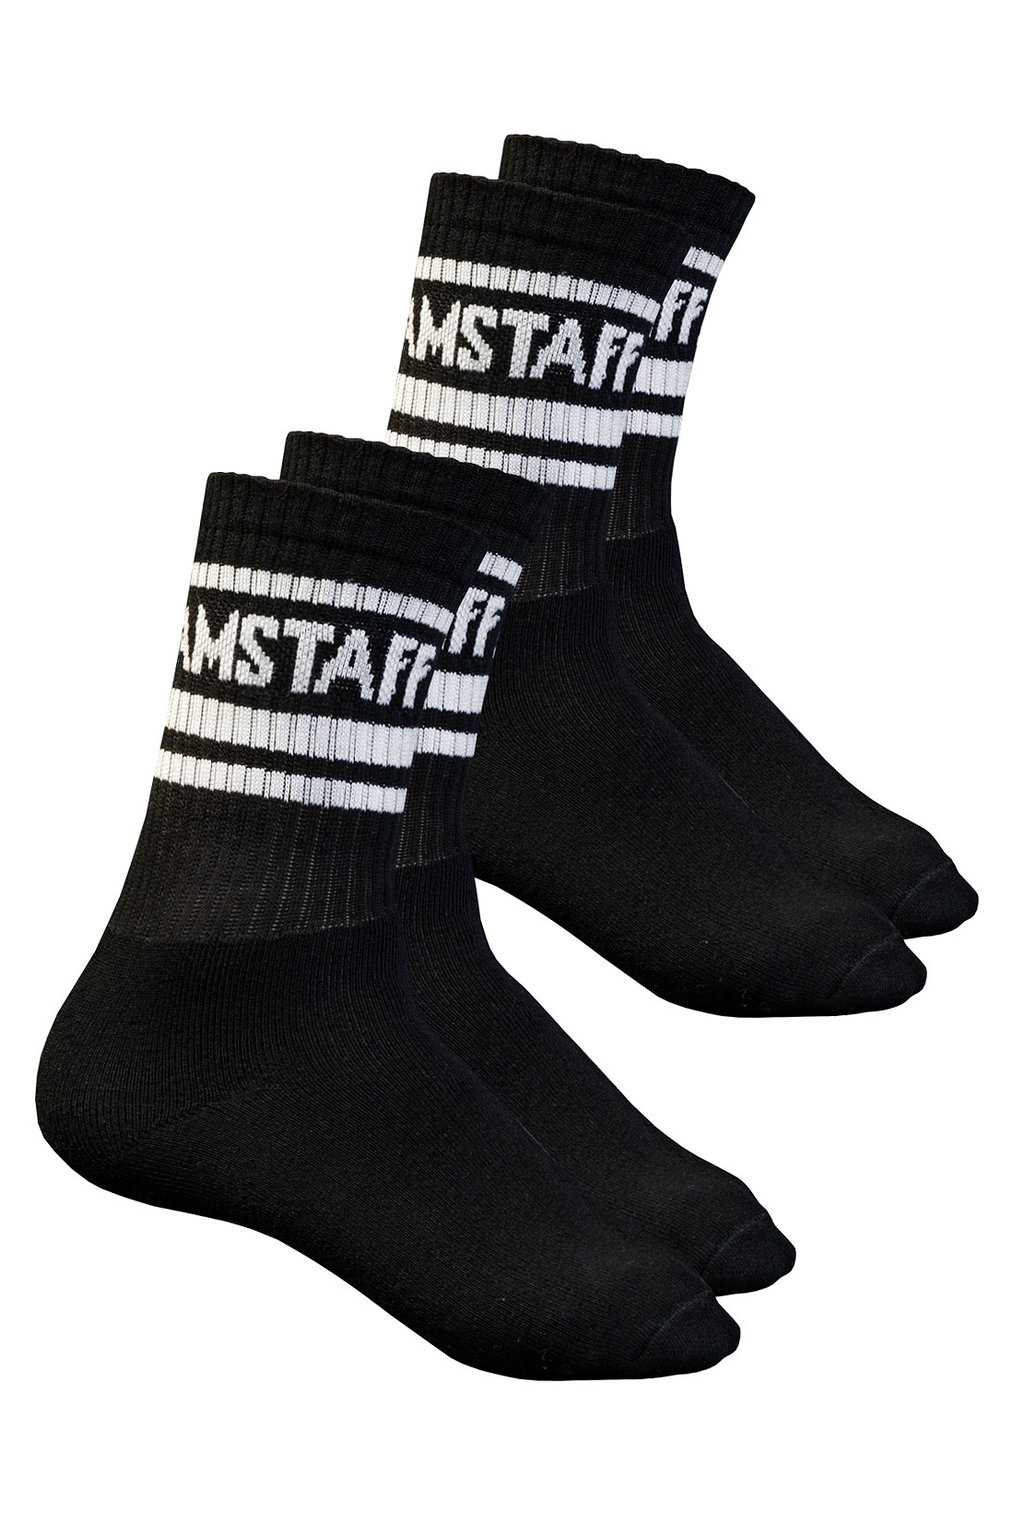 Ponožky Amstaff Taskus 2 páry v balení černé